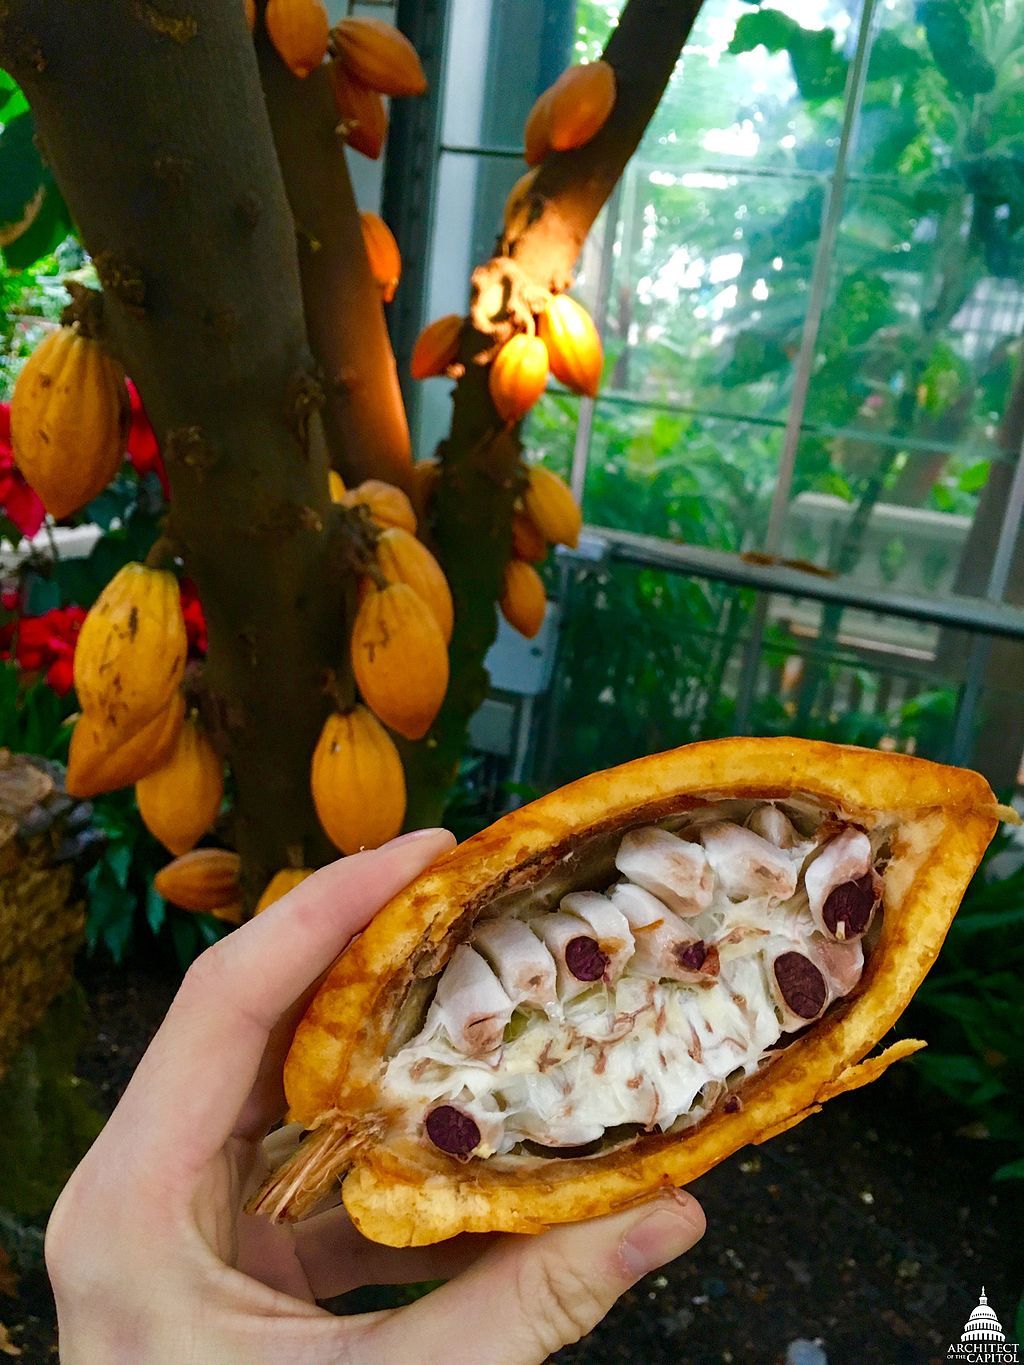 Какао (Theobroma Cacao)